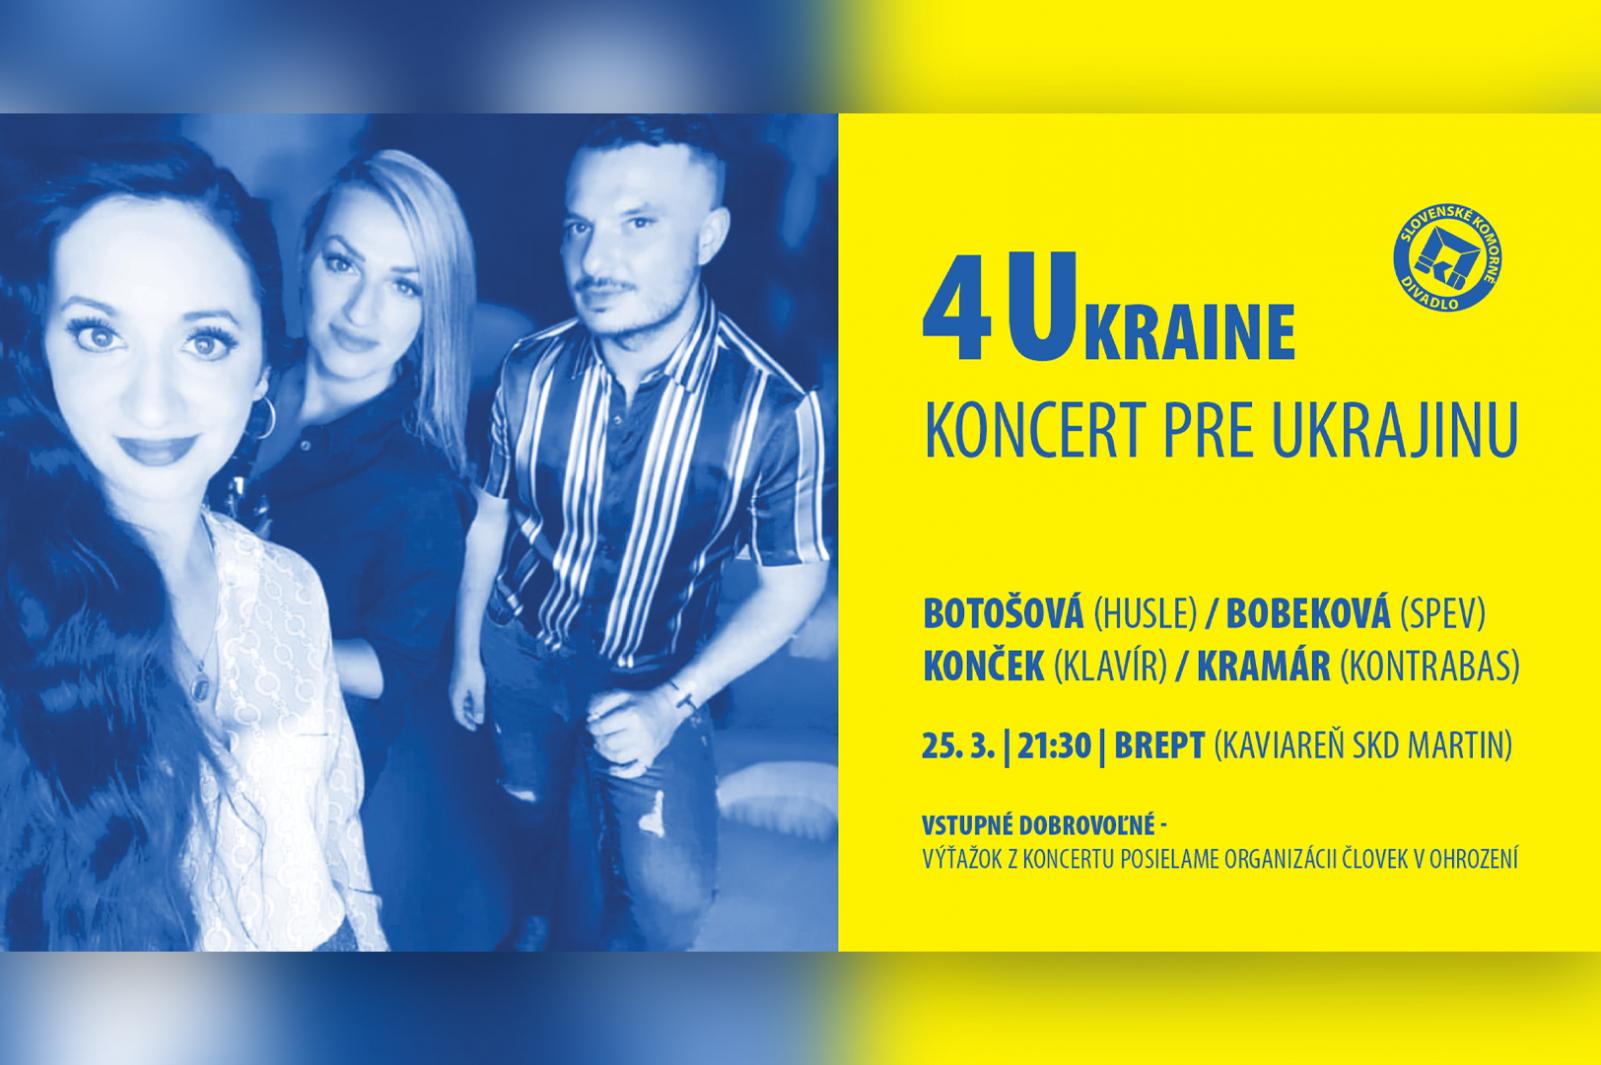 picture 4Ukraine - Koncert pre Ukrajinu